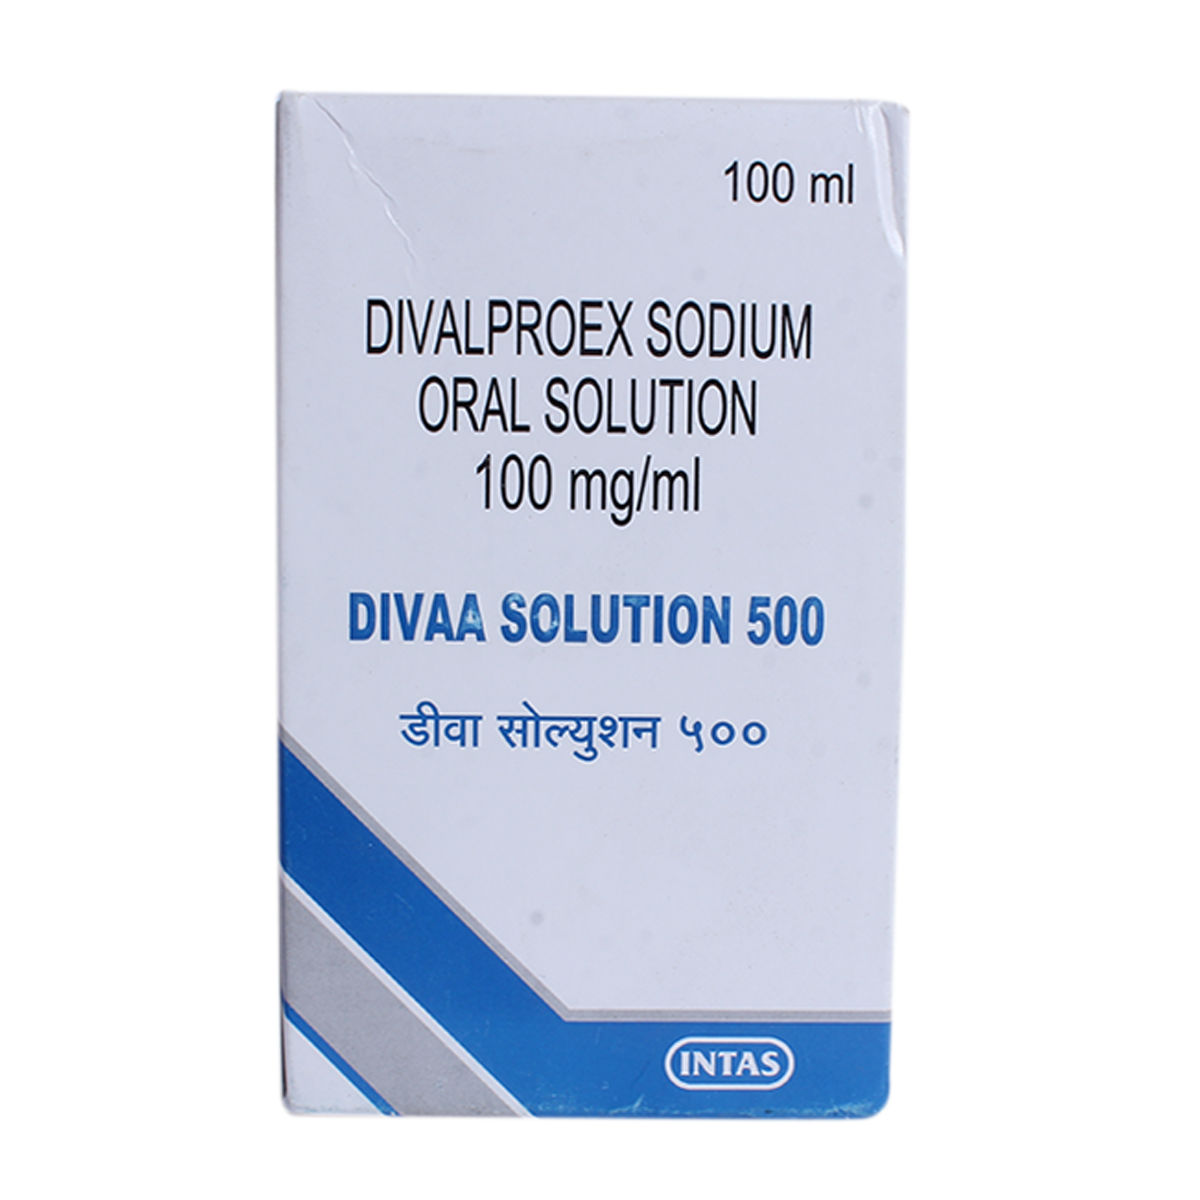 Buy Divaa 500 Solution 100 ml Online